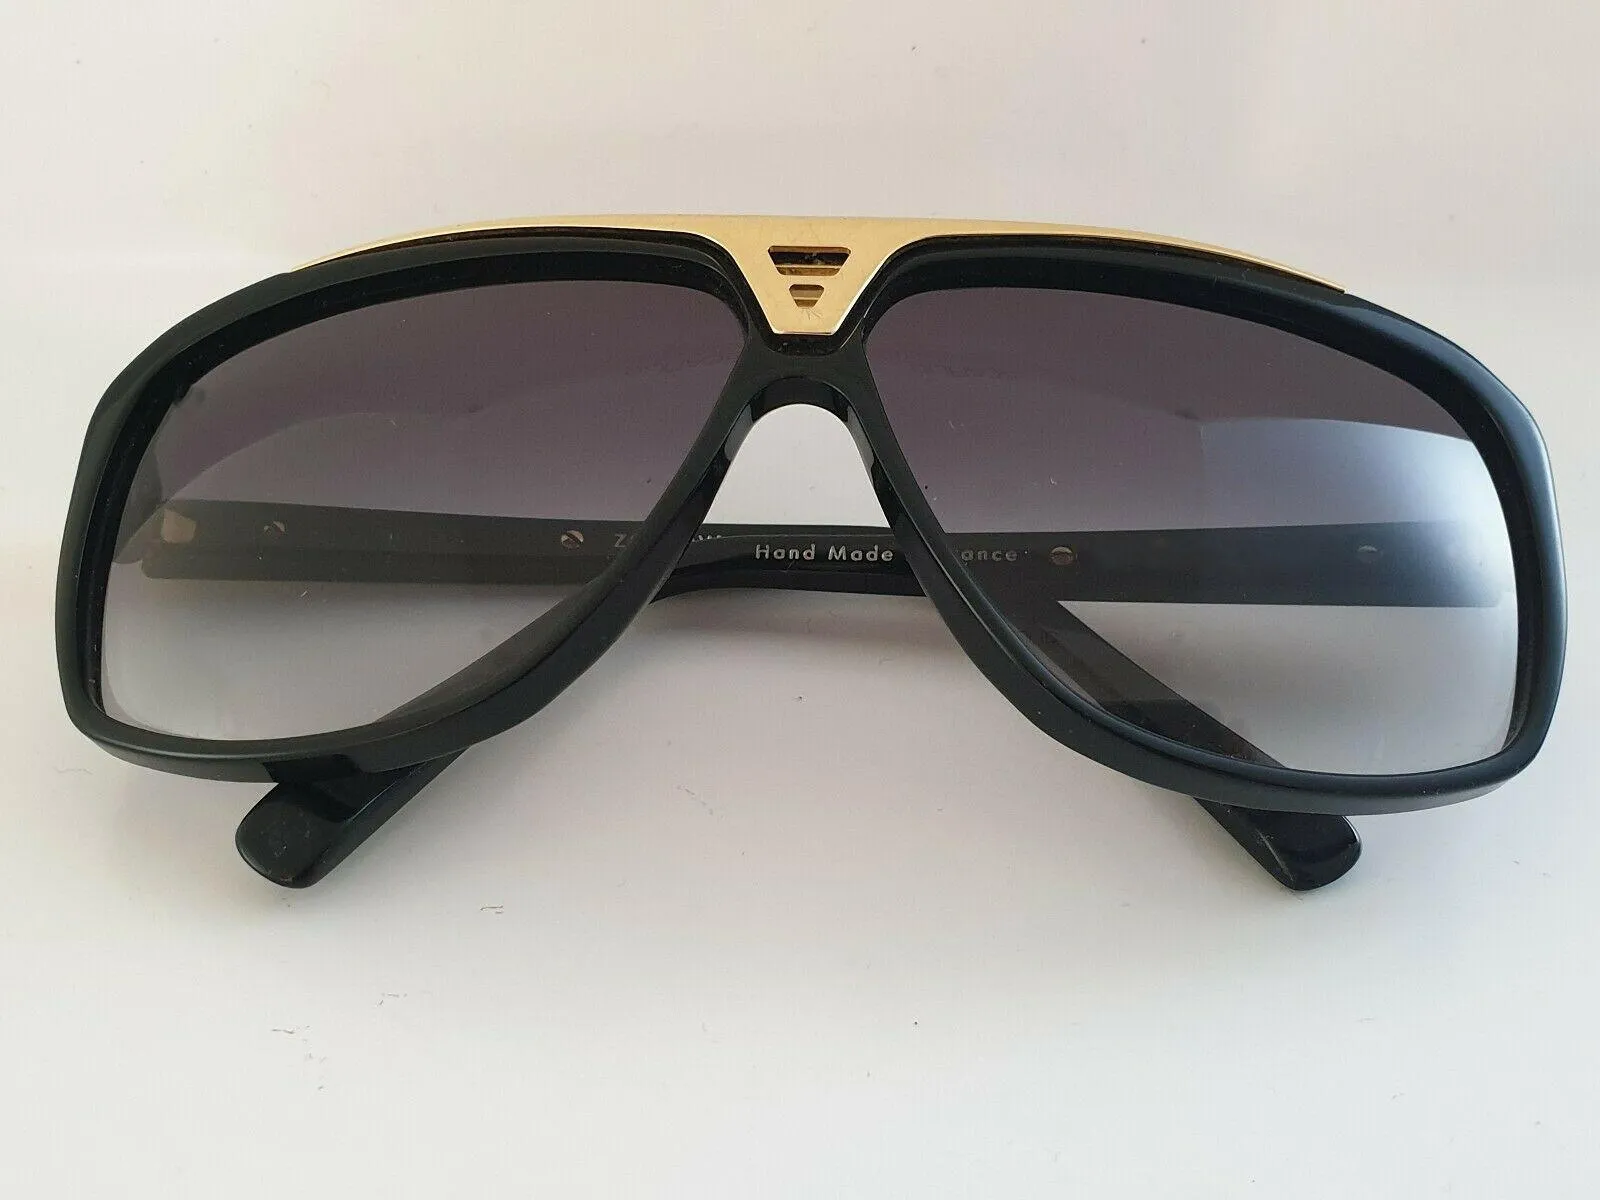 Модные роскошные новые солнцезащитные очки бренда Evidence для женщин, ретро, винтажные, мужские, дизайнерские, в блестящей золотой оправе, с лазерным логотипом, качество с коробкой304r